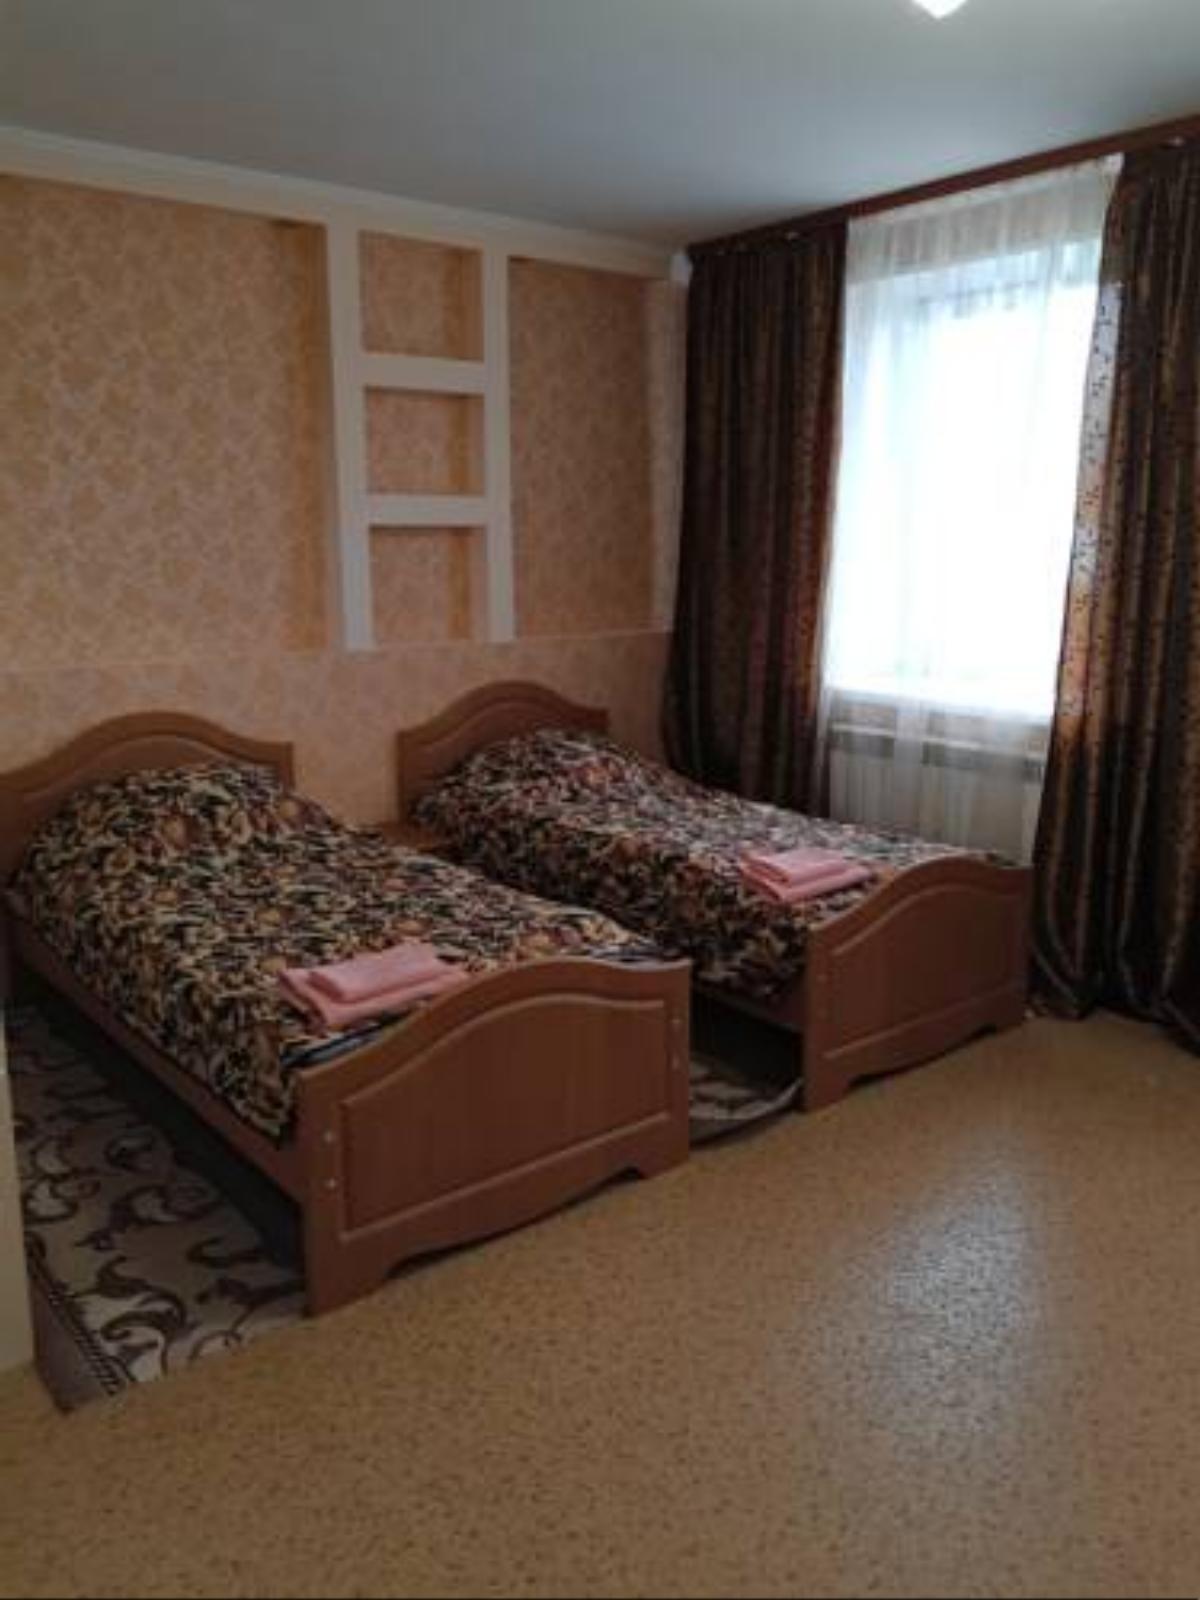 Guest house on Sverdlova Hotel Khanty-Mansiysk Russia